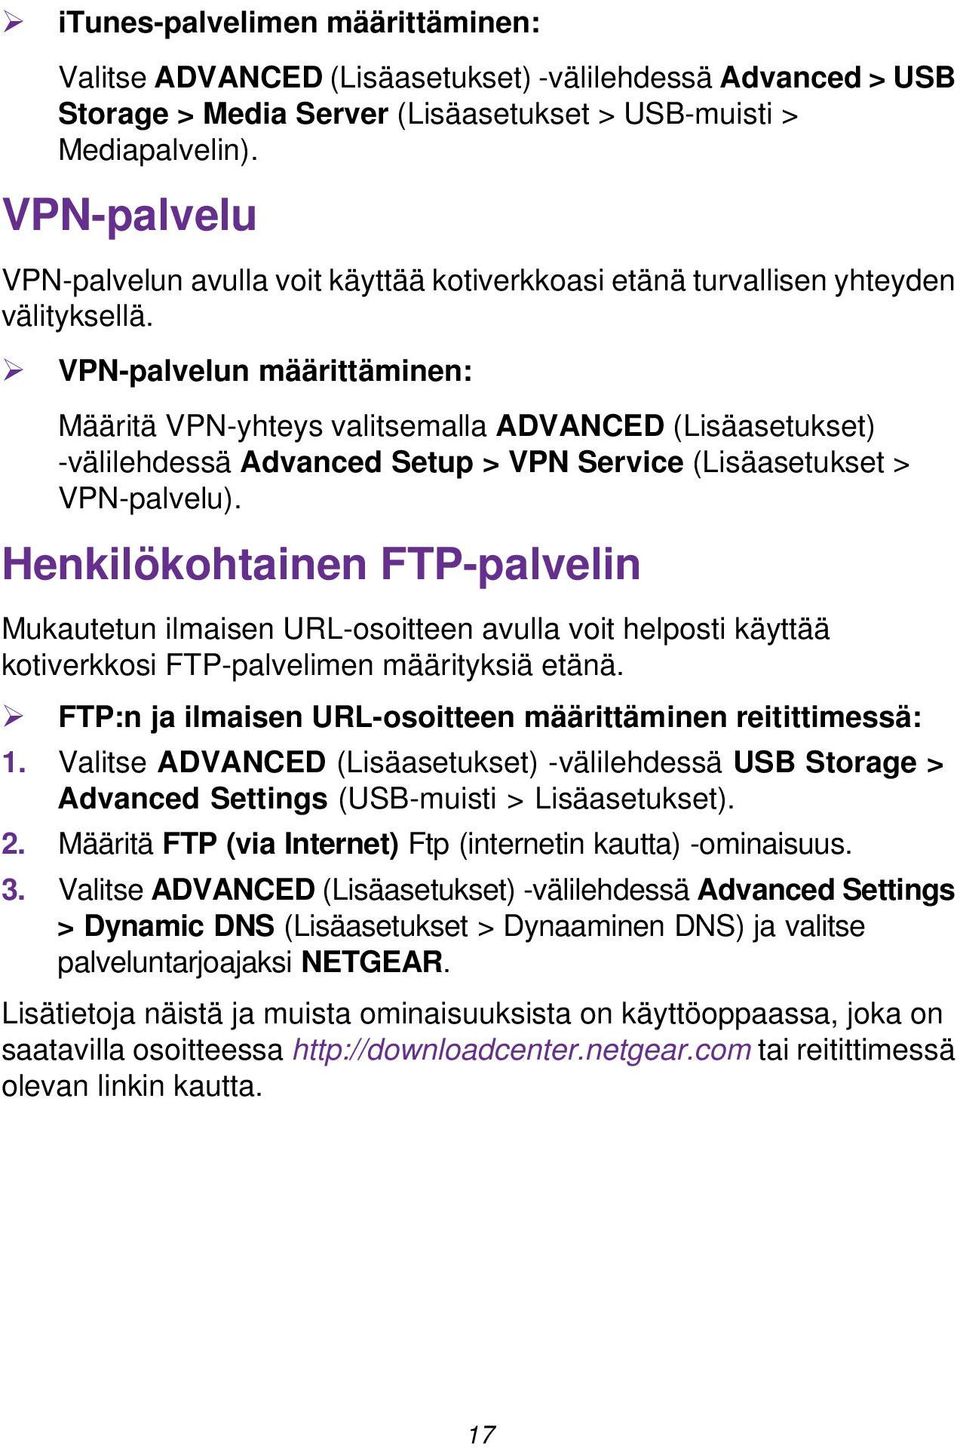 VPN-palvelun määrittäminen: Määritä VPN-yhteys valitsemalla ADVANCED (Lisäasetukset) -välilehdessä Advanced Setup > VPN Service (Lisäasetukset > VPN-palvelu).